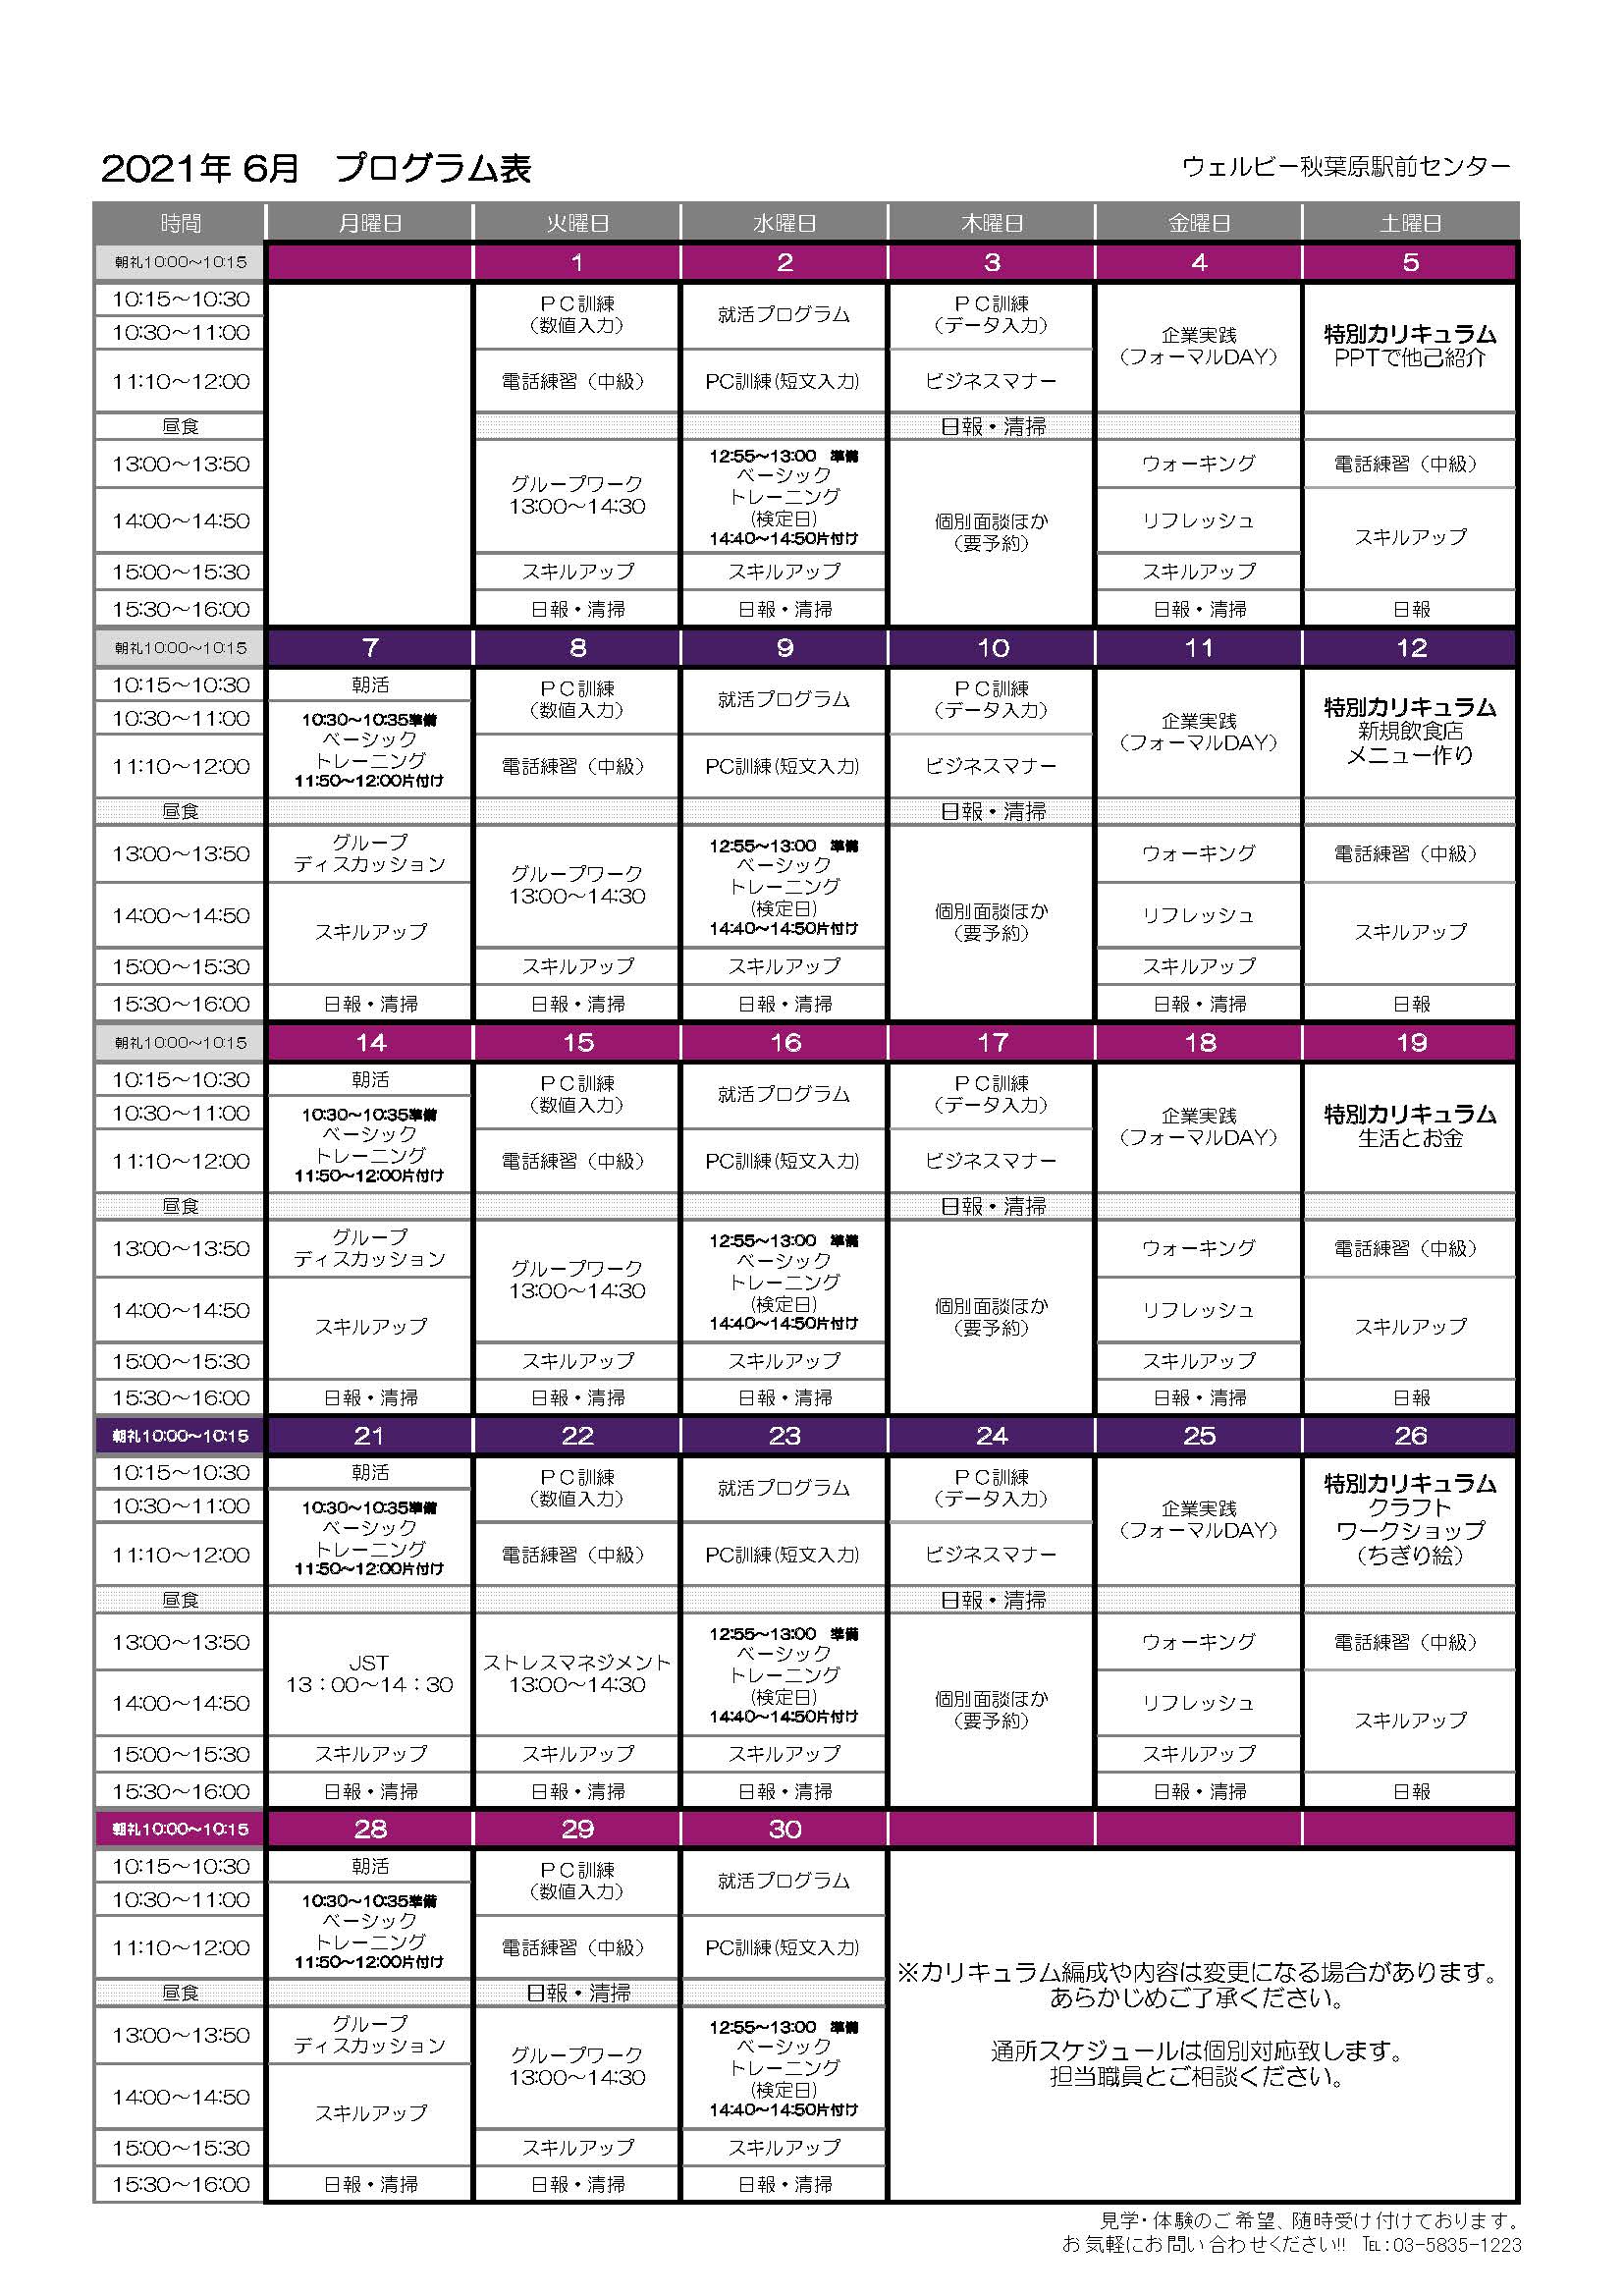 秋葉原駅前センター月間プログラム表(6月)